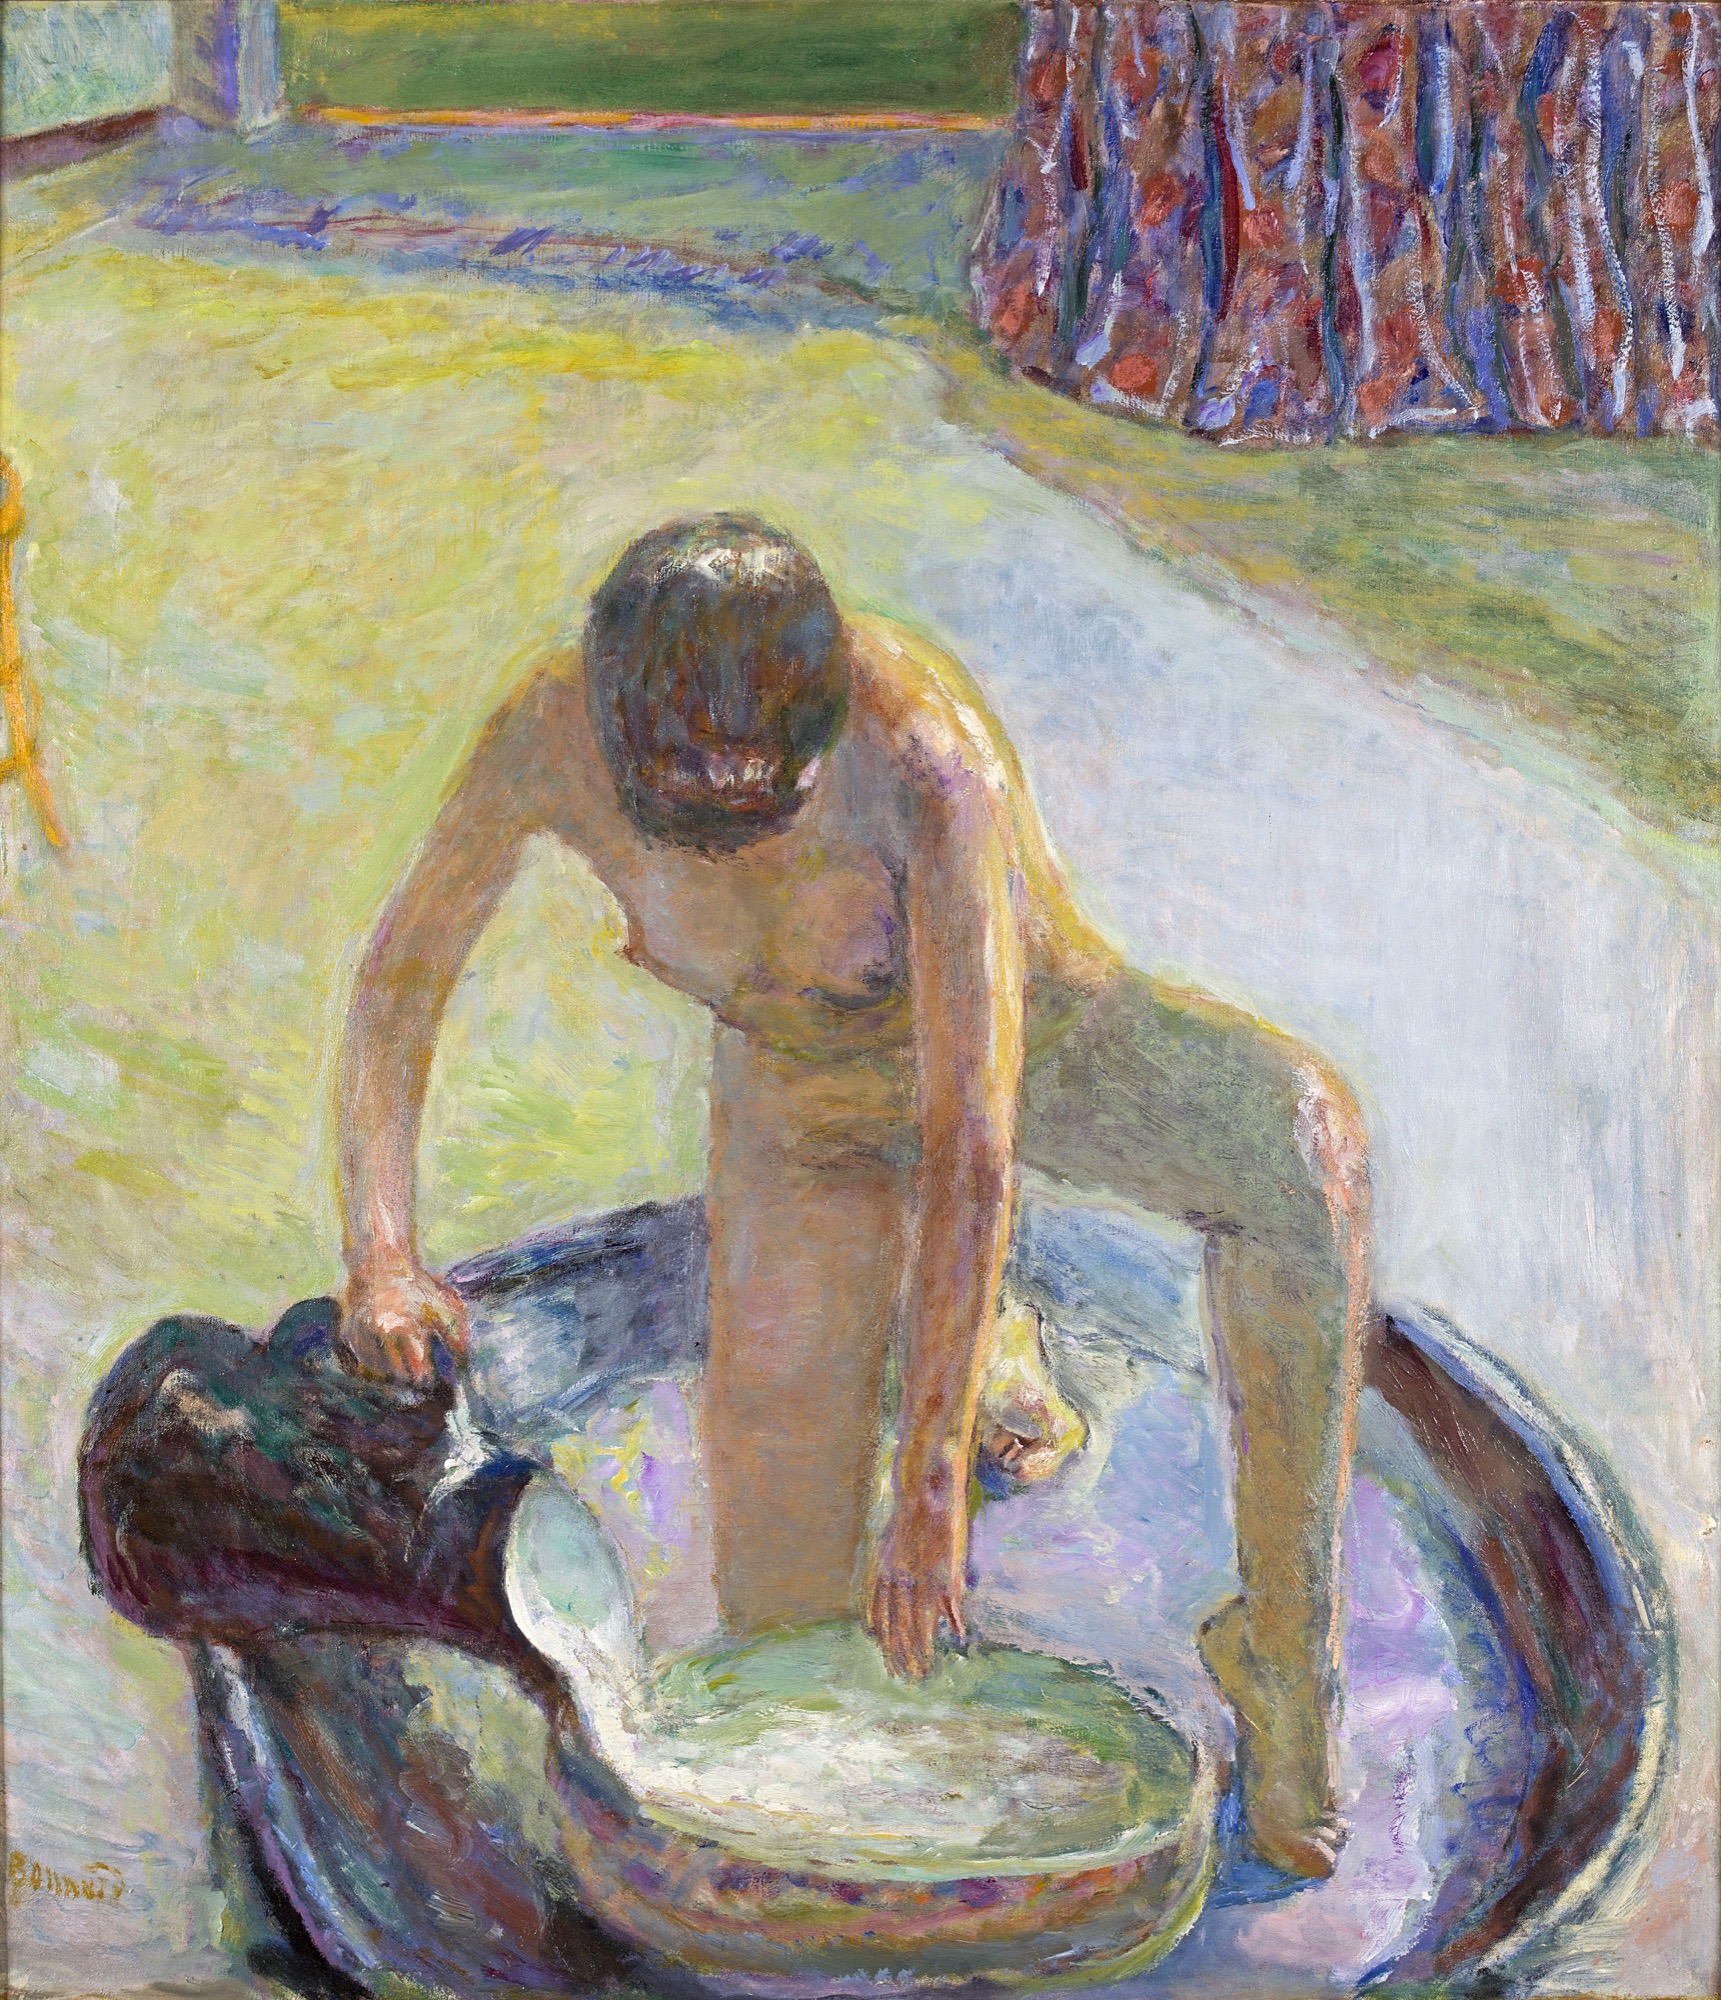 Pierre Bonnard, Nu accroupi au tub, 1918, oil on canvas, 85.3 x 74.5 cm. Musée d’Orsay, Paris. Gift of Zeïneb and Jean-Pierre Marcie- Rivière, 2016.